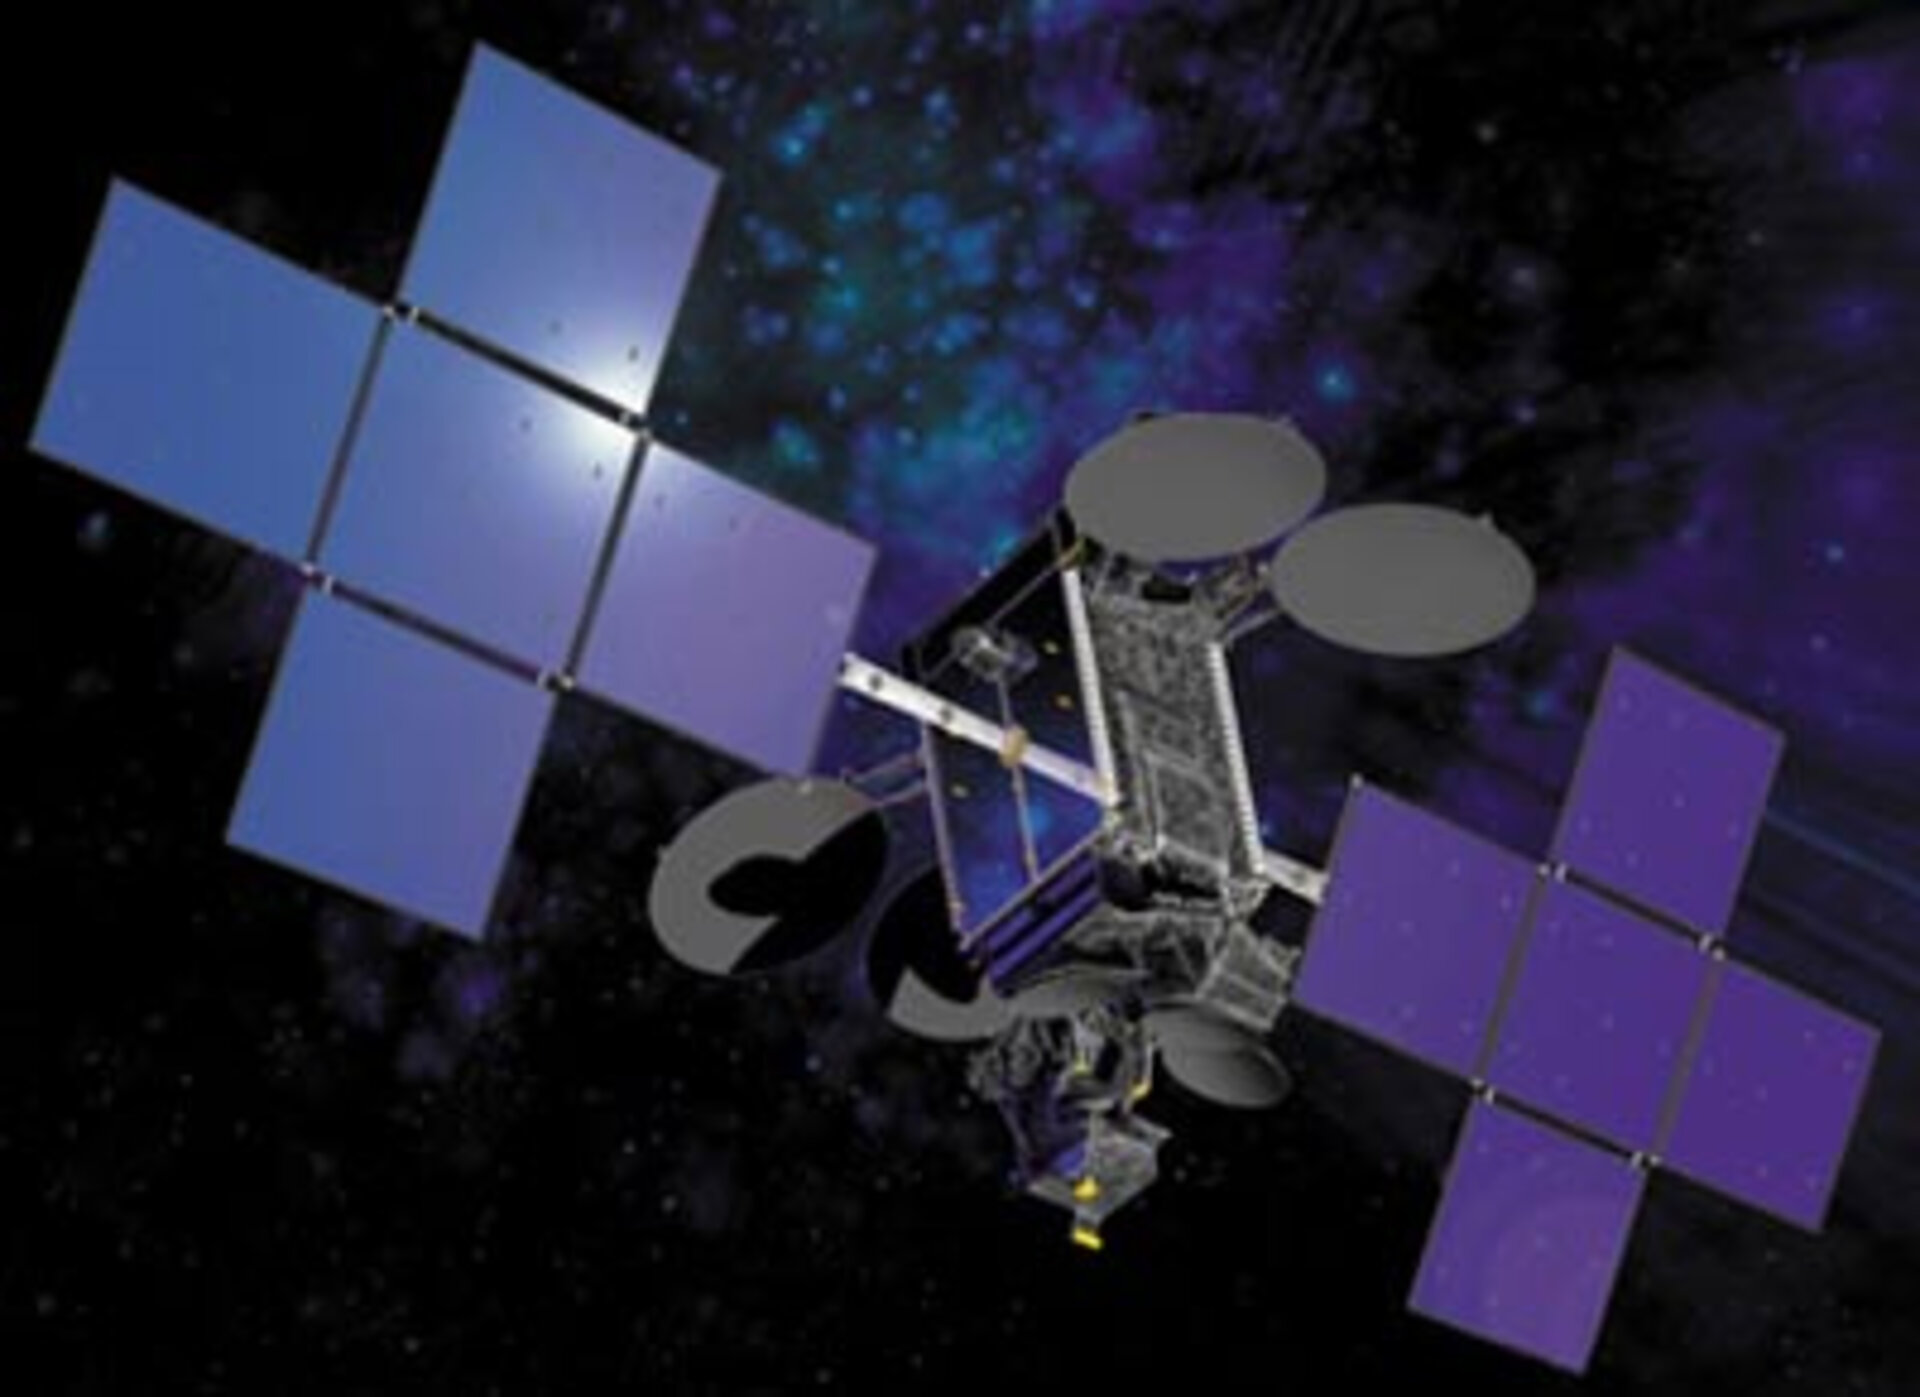 The THAICOM 4 satellite